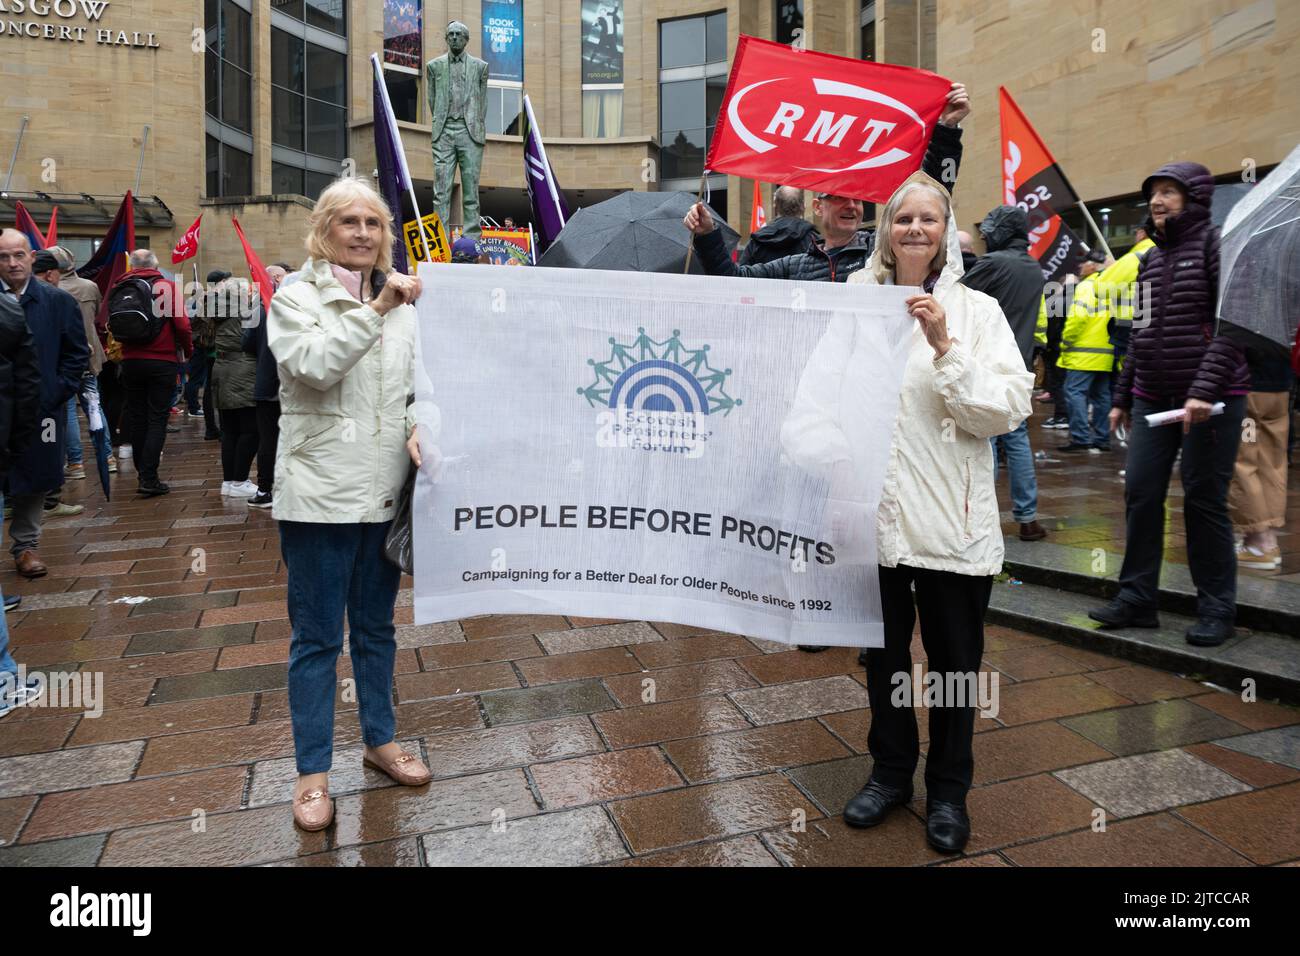 Scottish Pensioners Forum bannière People before profits tenue par des manifestants lors d'un rassemblement de grève collective, Glasgow, Écosse, Royaume-Uni 26 août 2022 Banque D'Images